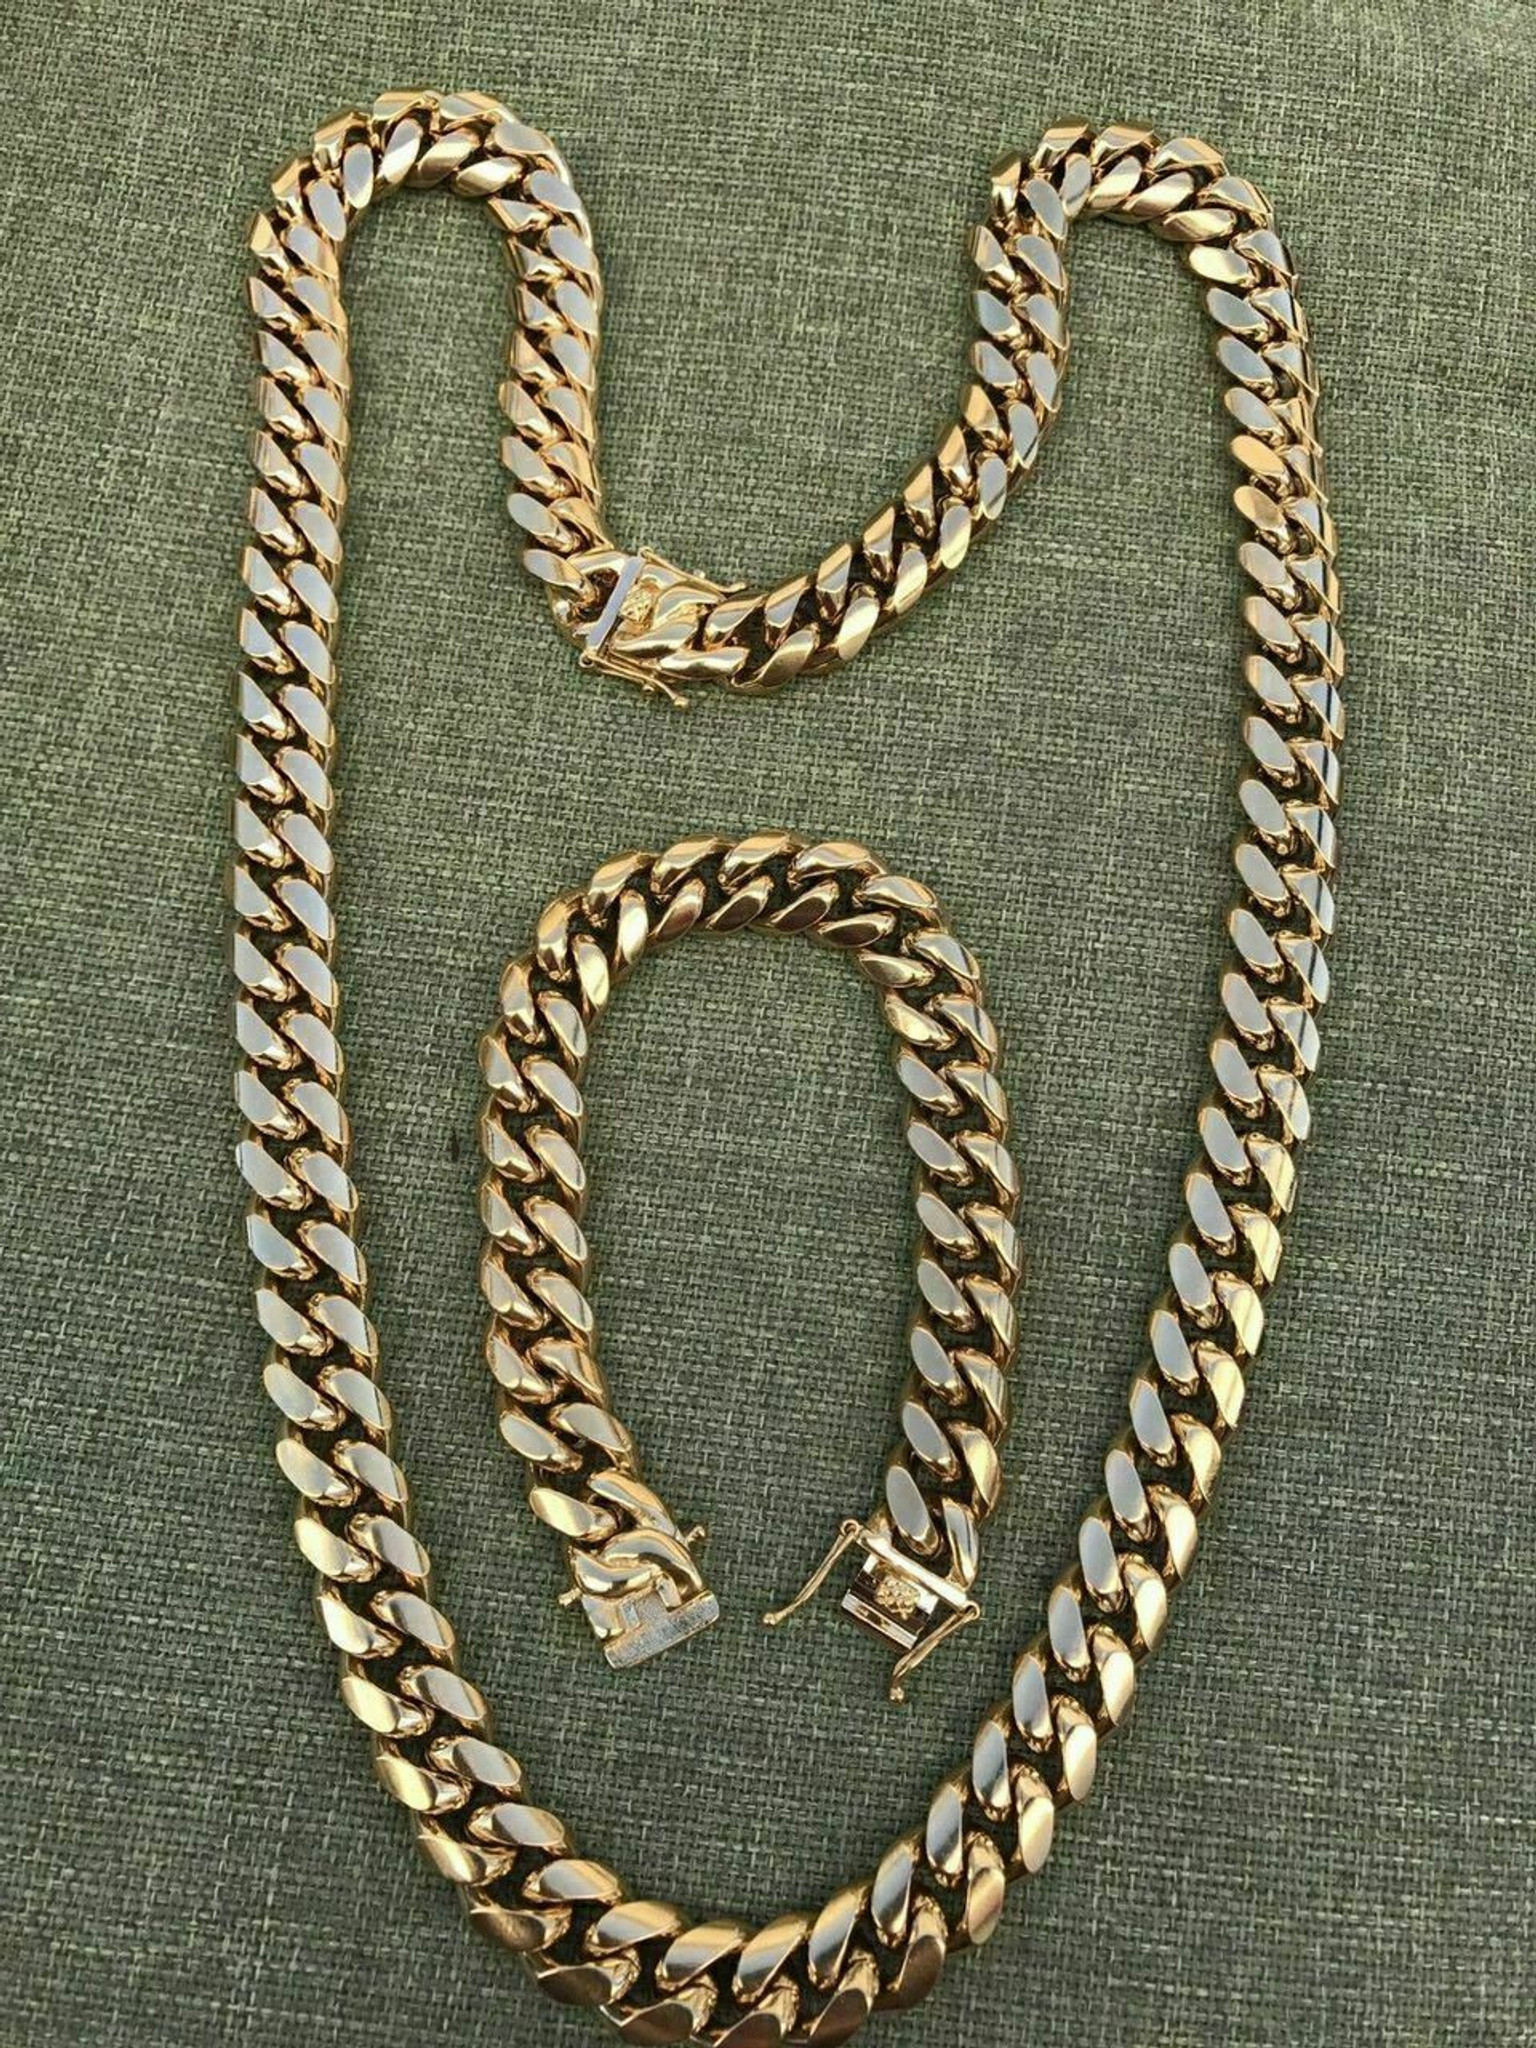 Men's 14mm Cuban Link Chain Necklace